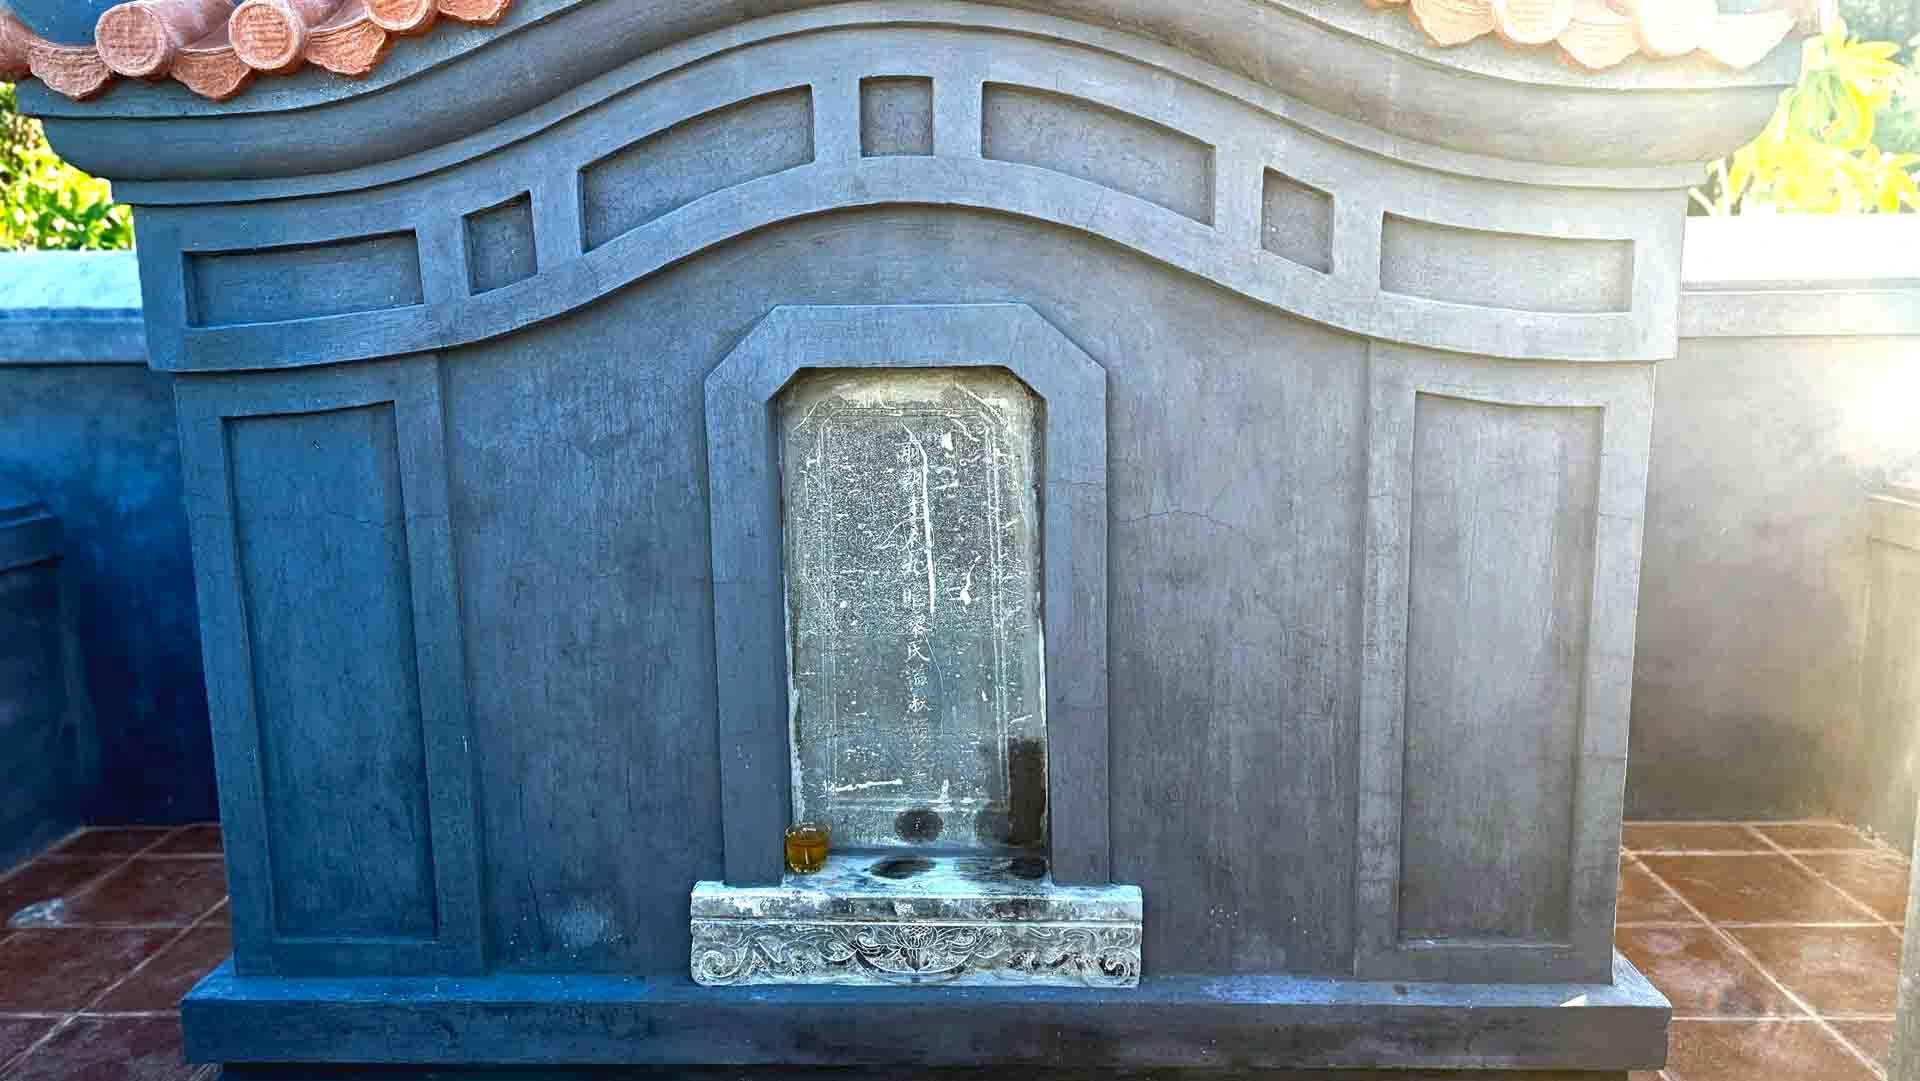  Bước vào khuôn viên khu mộ, có thể nhìn thấy tấm bia khắc dòng chữ Hán “Tiền triều Tài nhân Cửu giai Lê Thị thụy Thục Thuận chi mộ” được đặt tại bình phong.